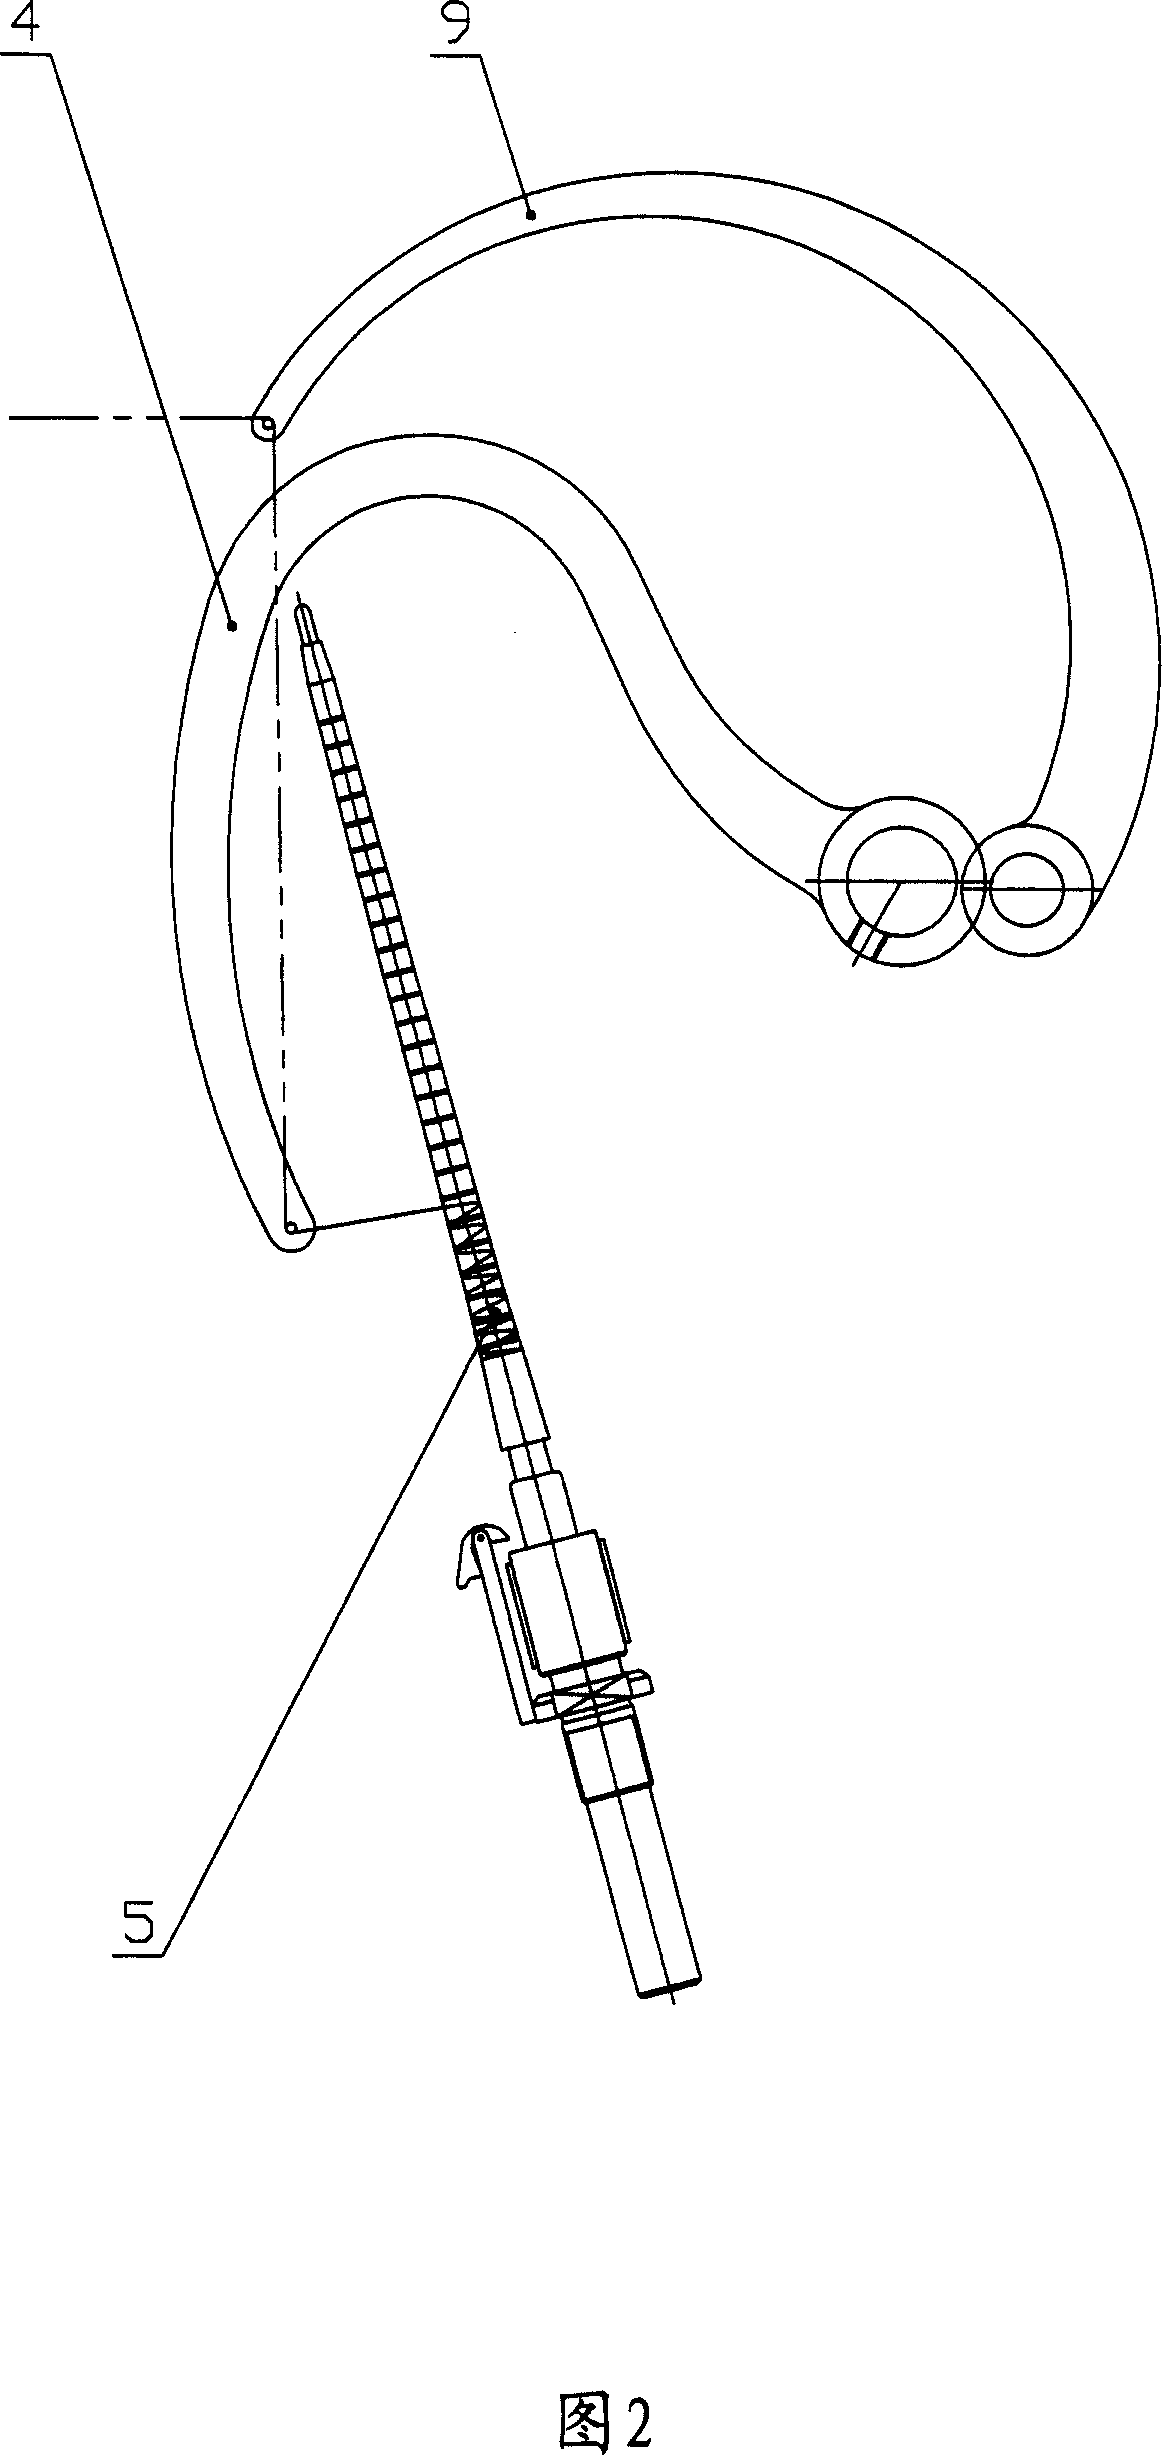 Yarn ear forming mechanism of mule spinning machine